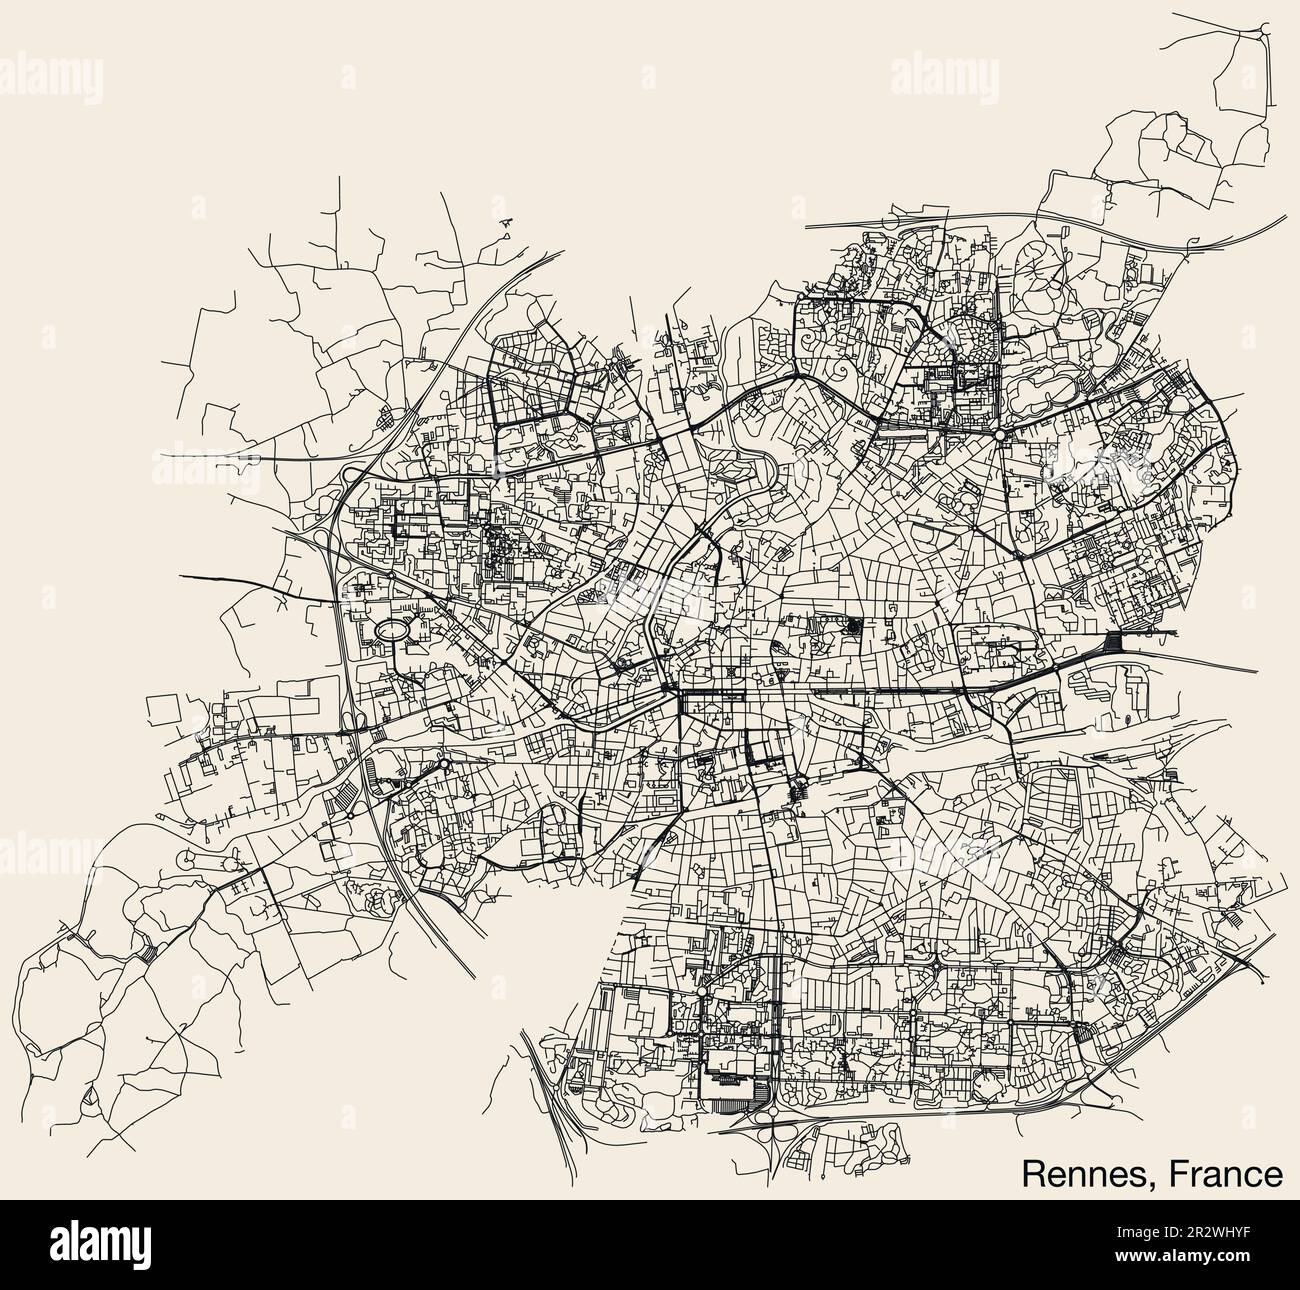 Detaillierte handgezeichnete Straßenkarte der französischen Stadt RENNES, FRANKREICH, mit soliden Straßenlinien und Namensschild auf altem Hintergrund Stock Vektor